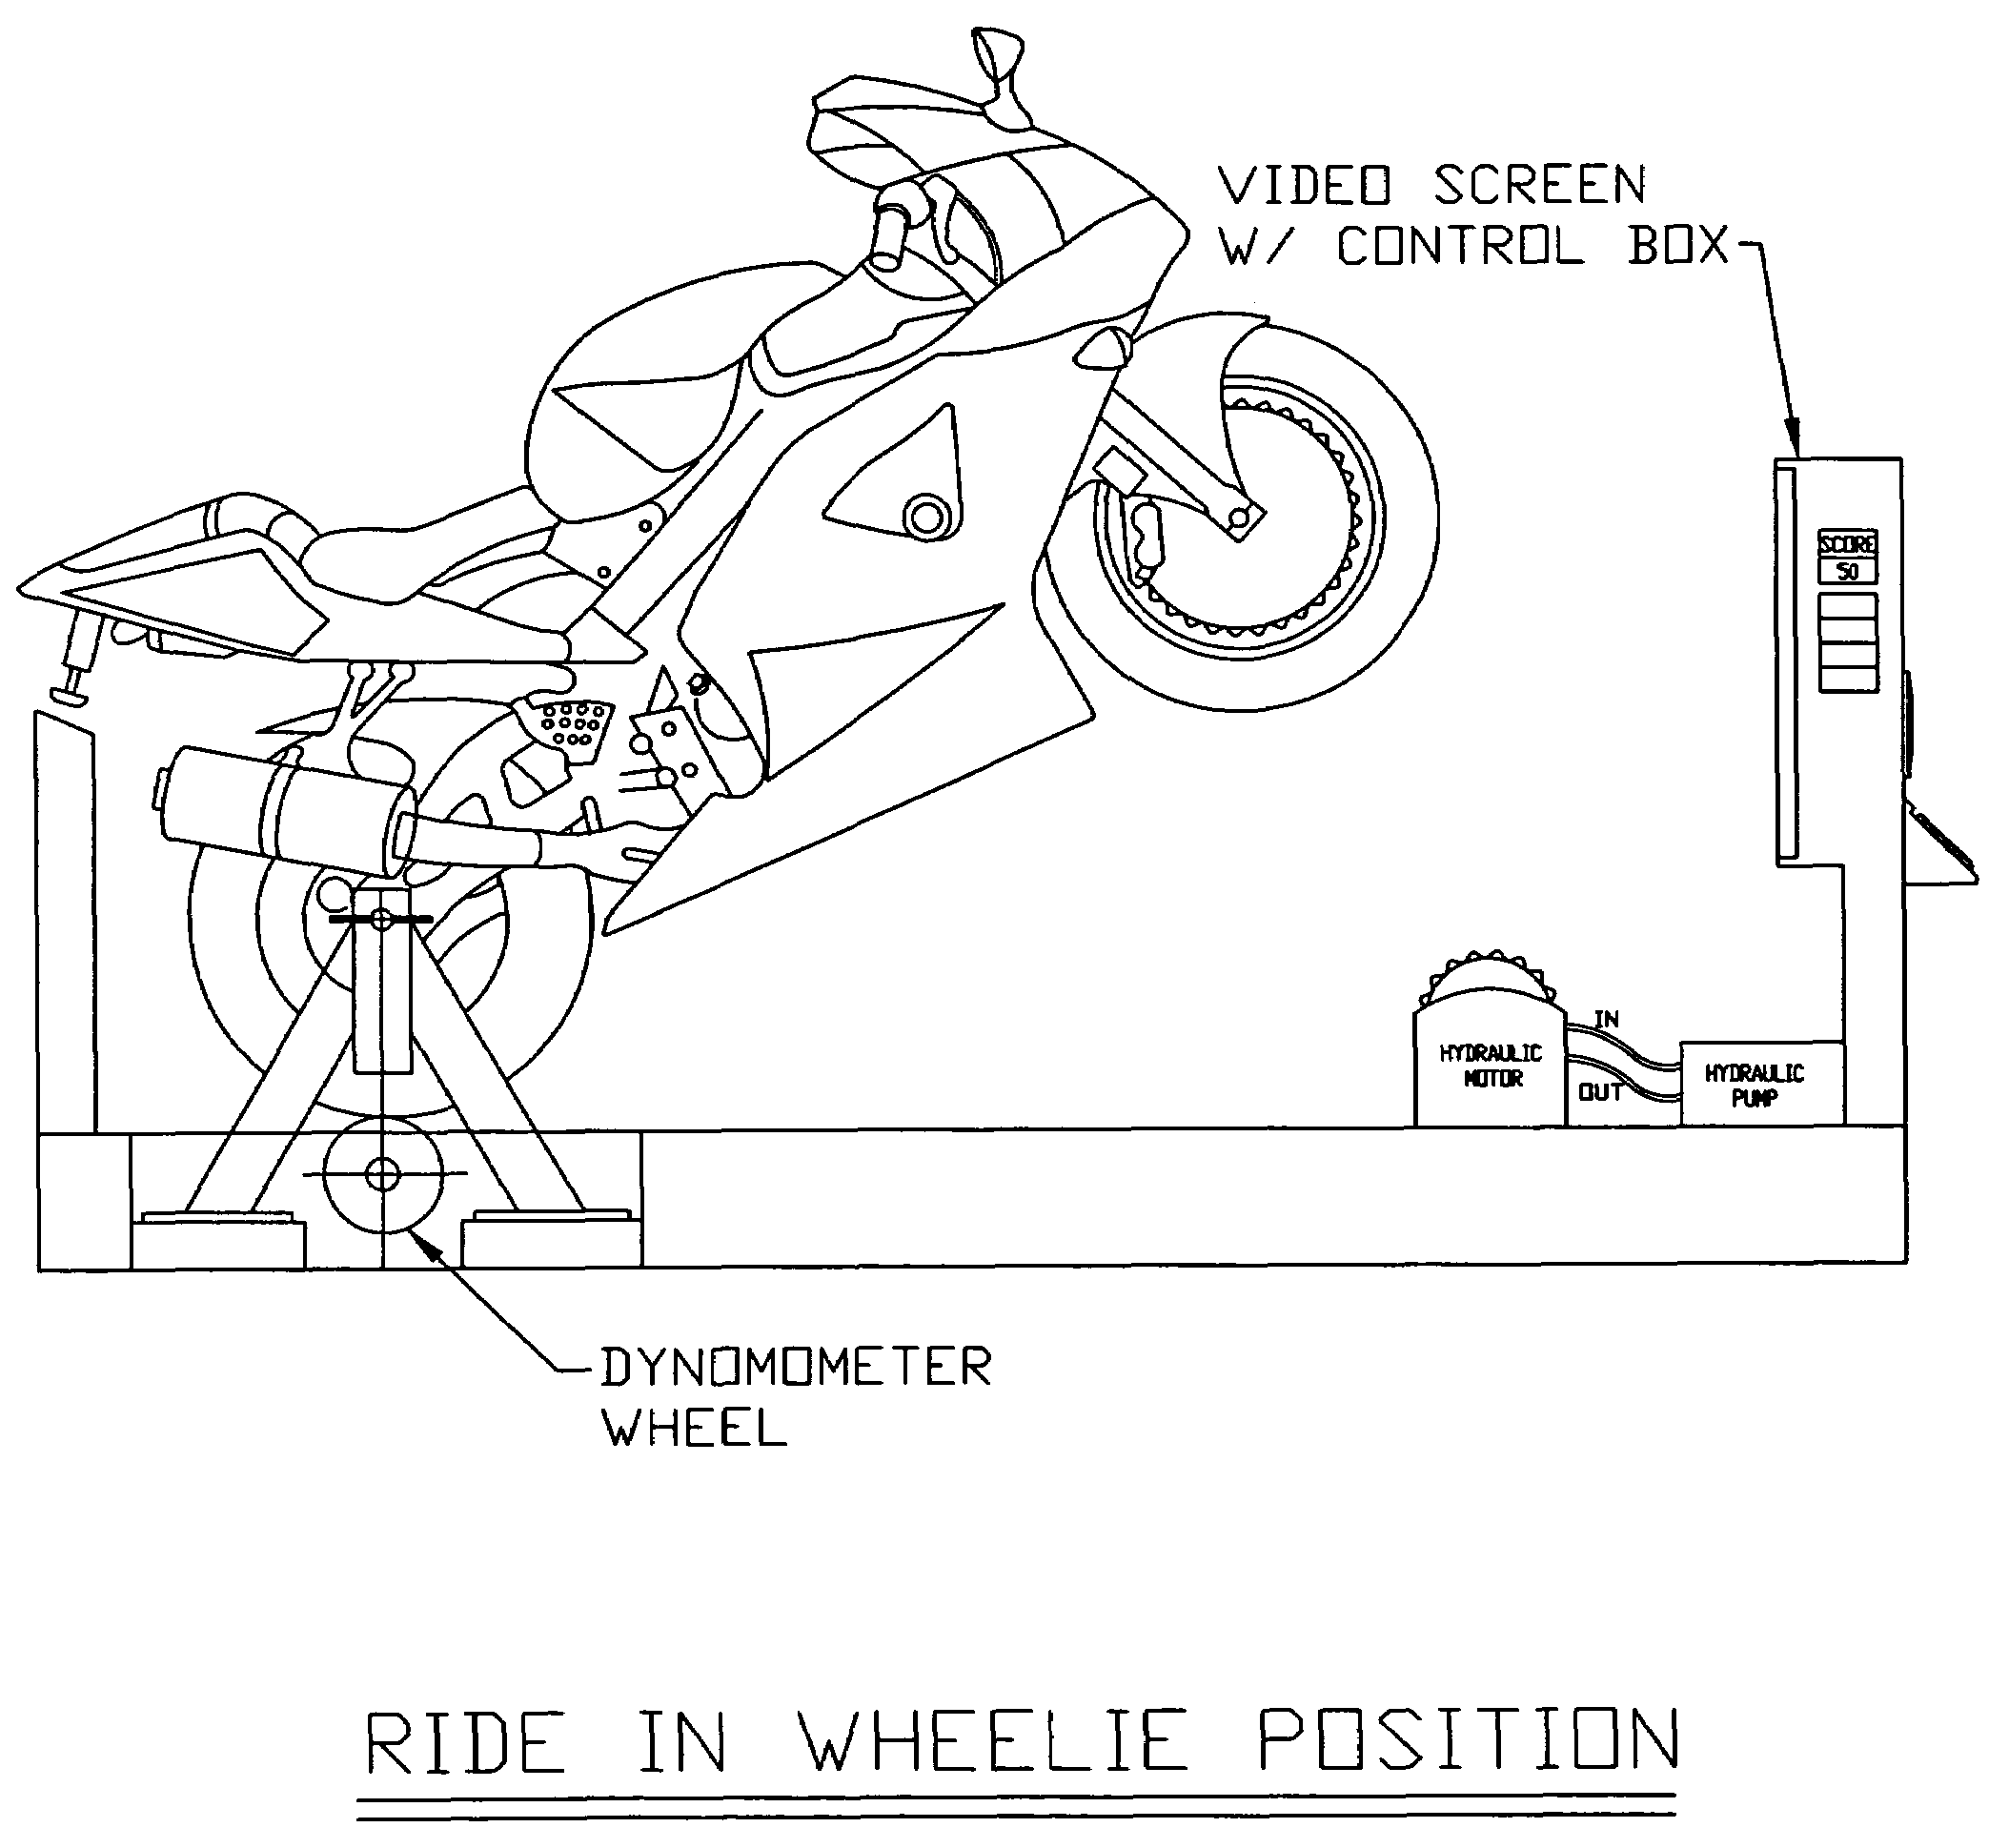 Motorcycle wheelie simulator